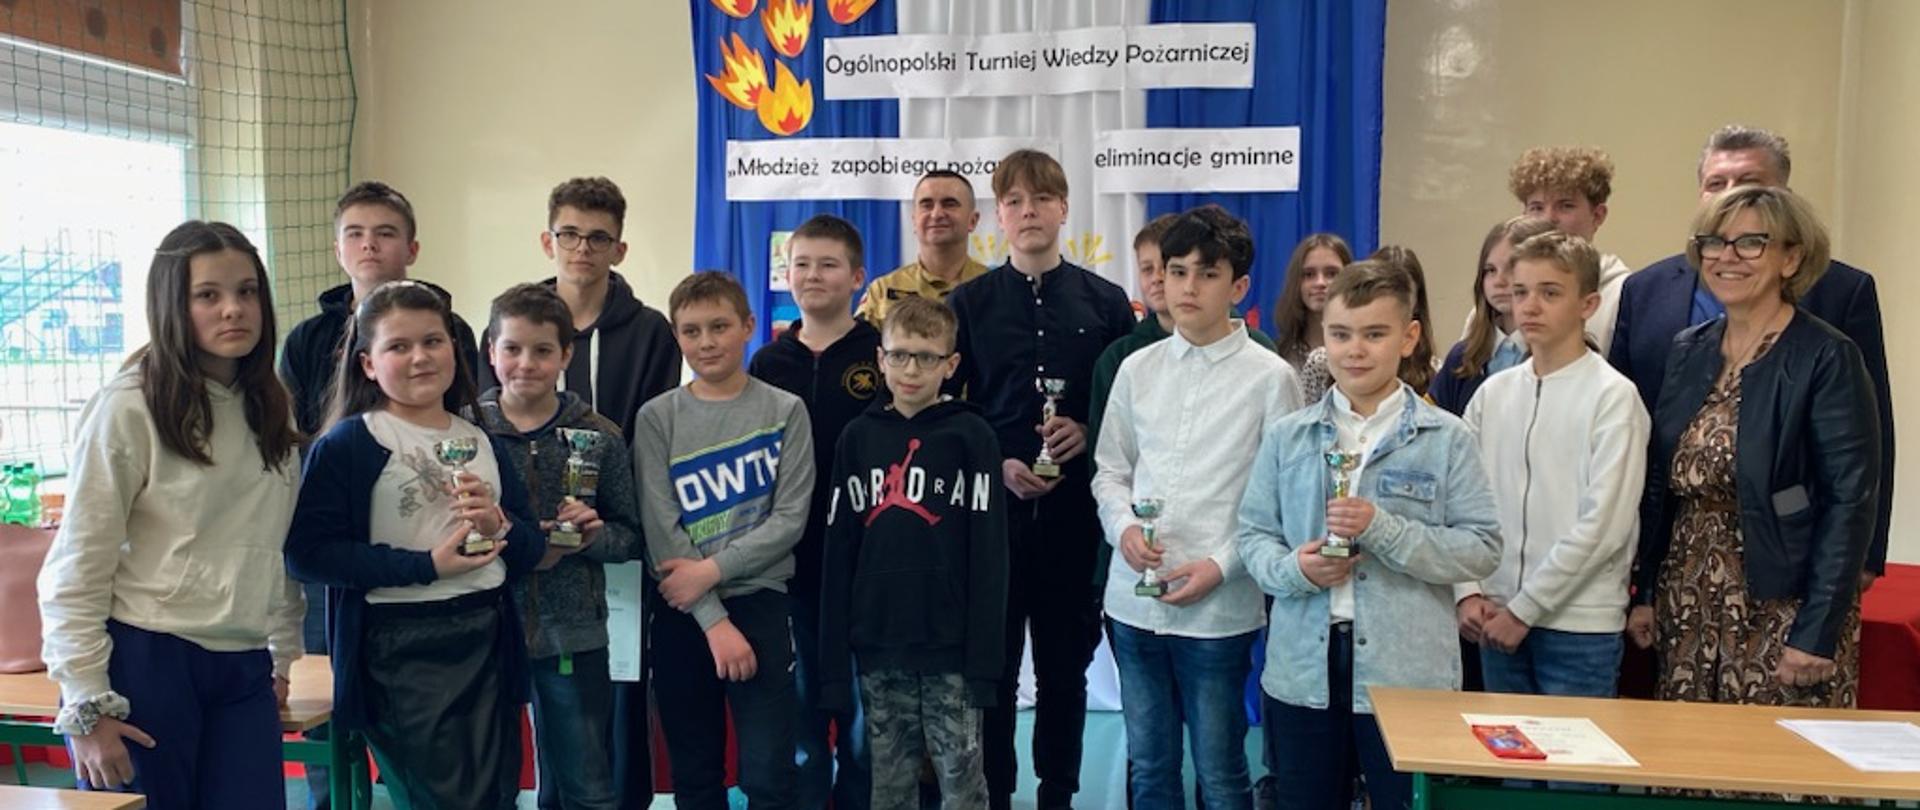 Eliminacje gminne OTWP „Młodzież Zapobiega Pożarom” w gminie Bodzechów